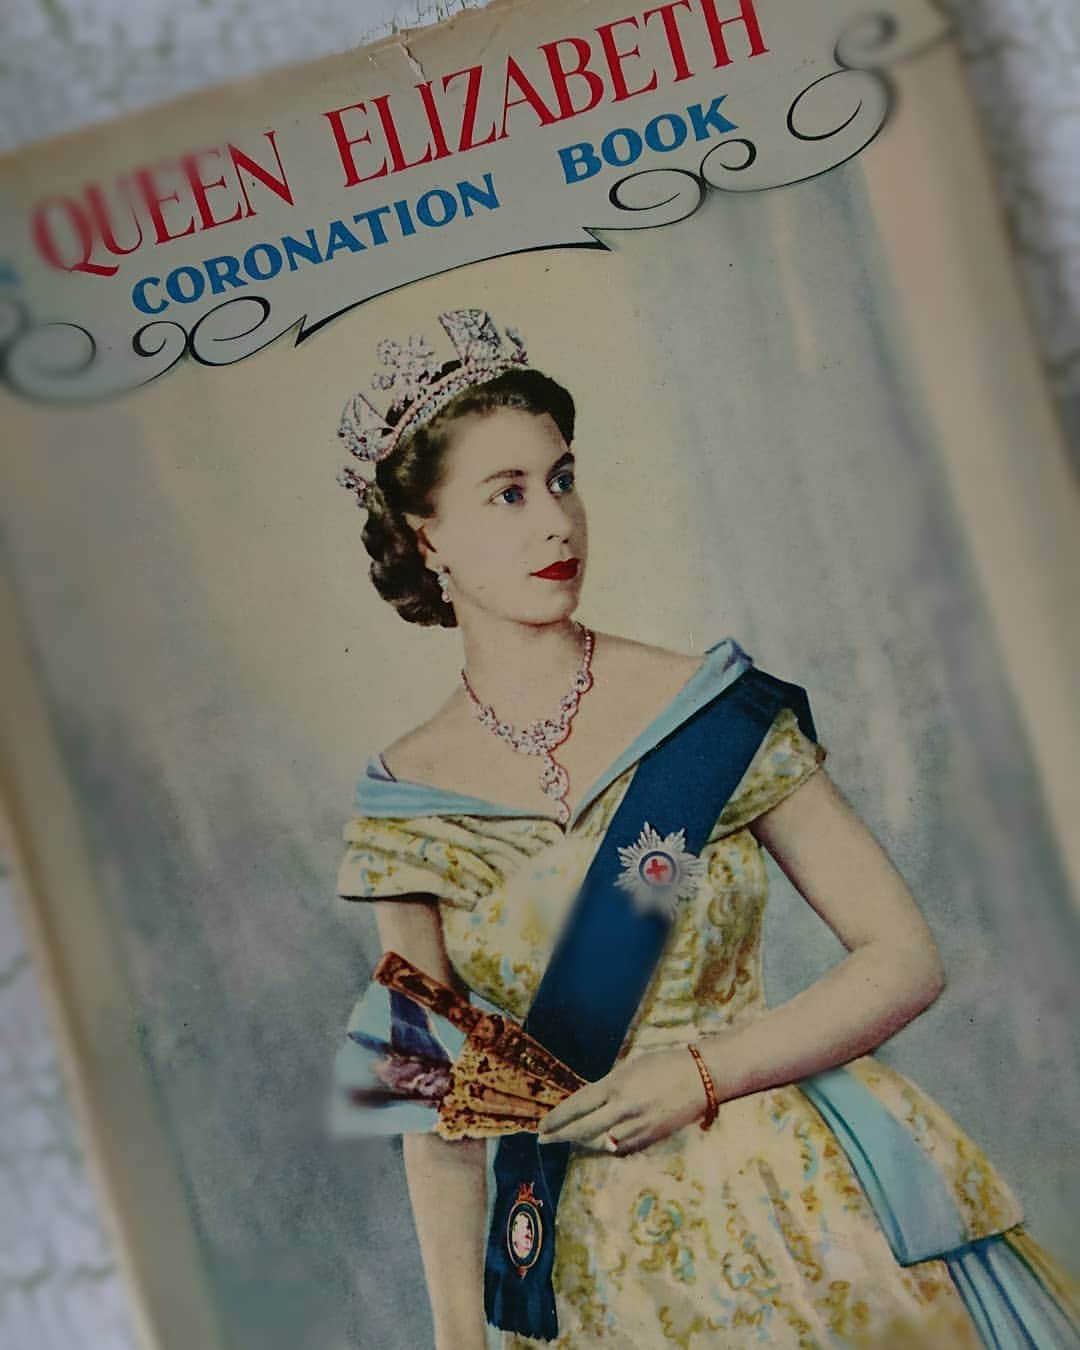 レトロスパイスのインスタグラム：「今日の写真は、『The Queen Erizabeth Coronation Book （エリザベス女王 戴冠記念写真集）』。 これも20日にネットショップにアップ予定。  前回、販売したときの半額位で出せる予定です～。 戴冠式の様子や、王冠の写真、王室での様子など、美しく貴重な写真が盛りだくさん♪  9ページ位は、ネットショップの商品ページに掲載いたしますので、よろしければイギリス王室の様子をのぞきに来てくださいね(^_^) 本好きの私としては、ちょっと手放しがたい気持ちもあるのですけどねっ。  でも、十分愛でましたので、いいかな～と(^_^) 実は私、本がすごくすごく好きみたいで、定期的に整理したり処分したりしているのですが、すぐにたまってしまいます(^_^;) それこそ床が落ちるんじゃないかというくらい。。。 結婚した当初、夫は、 「なぜこいつは、こんなに本を買ってくるのだ！？」 と、そうとうビックリしたようで・・・、 「これはすごい無駄遣いなんじゃないか？  図書館の本でガマンするとかできないのか？」 と思ったようです。  でも、夫が、何か知りたいことがあったとき、読みたい本が出てきたとき、私の本棚にたいていあることが多く、「これは便利♪」と思ってから、「まぁ、いいや」と思うようになったみたい。  みんなひとそれぞれ、大好きなこととか、気がついたら自然にやっていることとかあると思うのですが、  私の場合、活字を読む、文章を書くというのは、呼吸と同じ。  私にとっては、欠かせないことなんですよね～。 ちなみにうちの長男は、車とバイクが趣味だし、隣の骨董屋さんはアンティーク時計のコレクターさん。時計 Love です♪  みんなそれぞれ大好きなものがあって、他人から見ると「なんでそんなことにお金を使うの？必要ないでしょ」って、思われてしまうかもしれませんけど、  でも、「『豊かさ』って、『必要じゃないもの』の中にあるんじゃないかな」と、思います(^_^) 「必要じゃないけど大好きなもの」。 それを自分に許してあげるって、時にはちょっぴり勇気が必要かもしれませんけど、それを楽しむことは、自分への愛情表現の一つじゃないかな。  そんな風に思います(^_^) . . .  #レトロスパイス #アンティーク #アンティークショップ #アンティーク雑貨 #ヴィンテージ #ヴィンテージショップ #ヴィンテージ雑貨 #ビンテージ #ビンテージ雑貨 #ビンテージショップ #古道具 #古道具屋 #骨董 #骨董屋 #アンティークのある暮らし #暮らし #くらし #レトロ #インテリア #イギリス王室 #エリザベス」